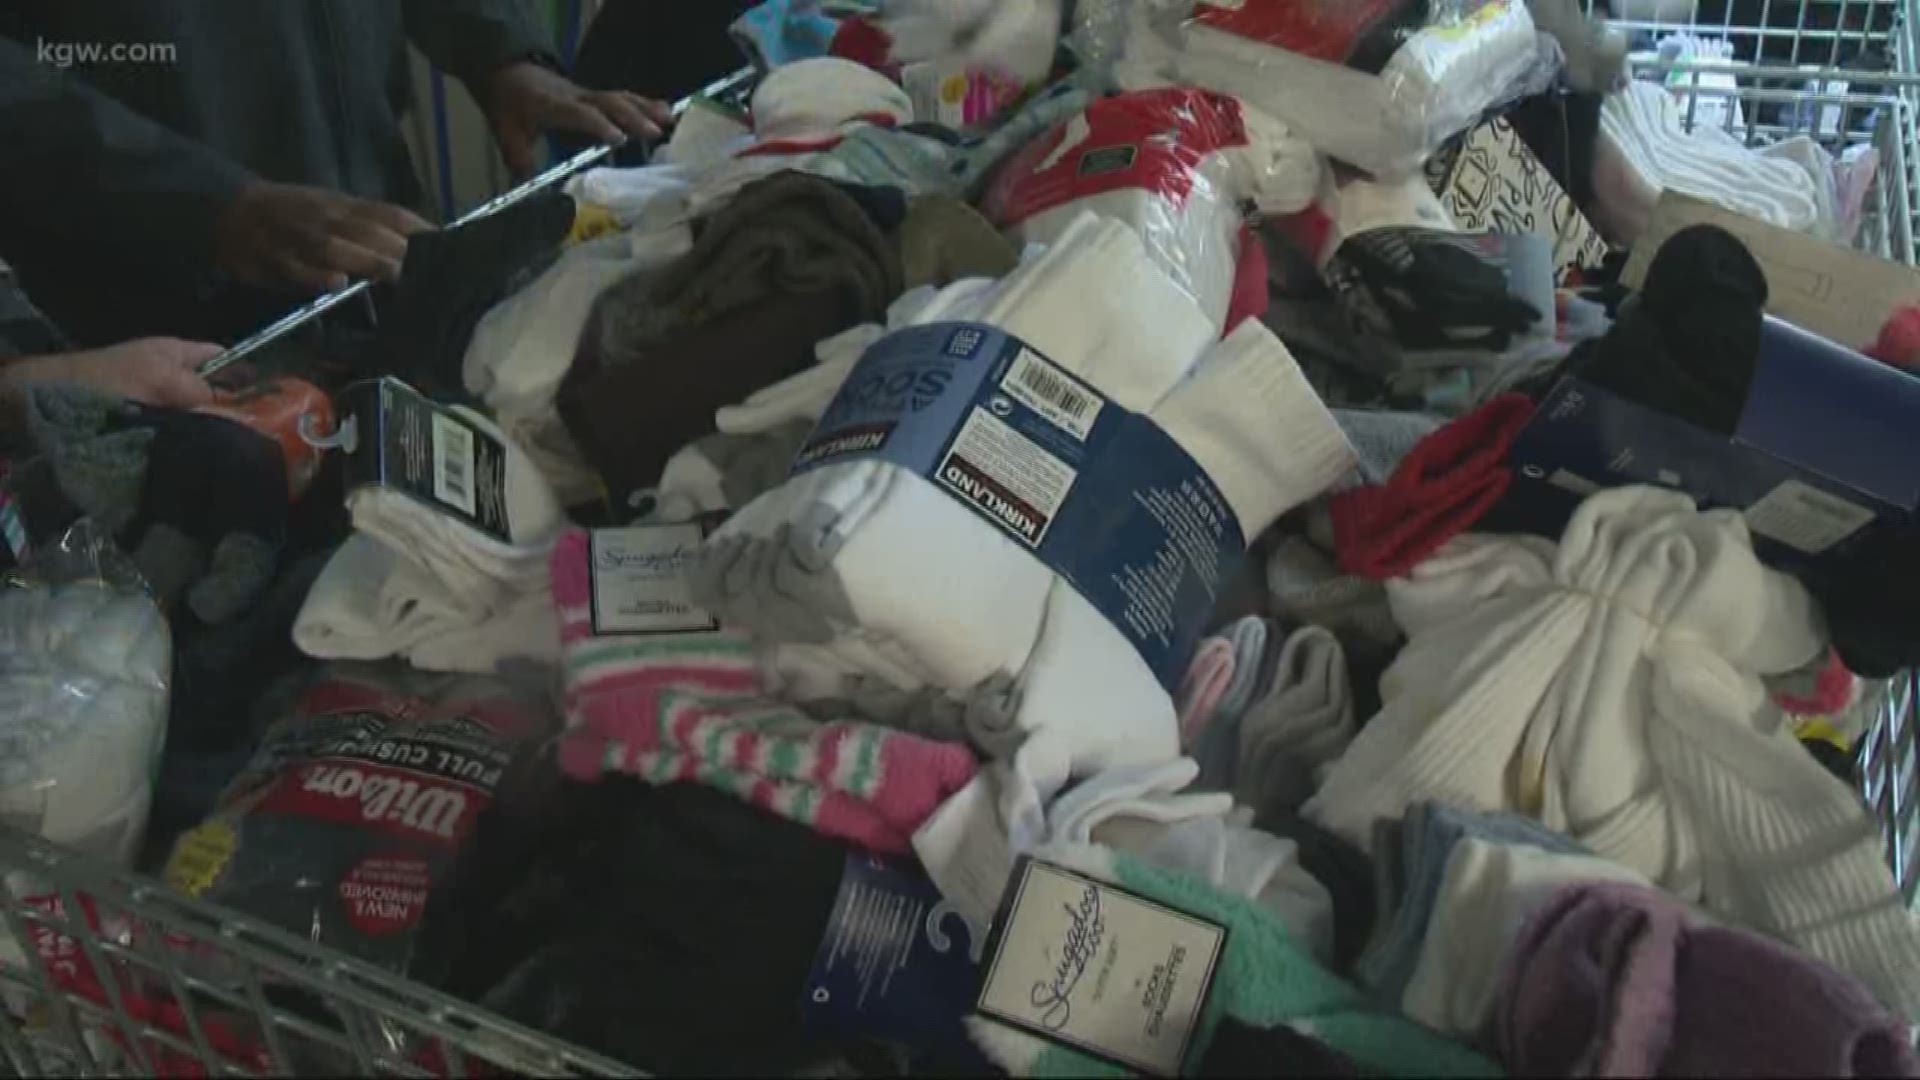 Company donates socks to Portland's homeless